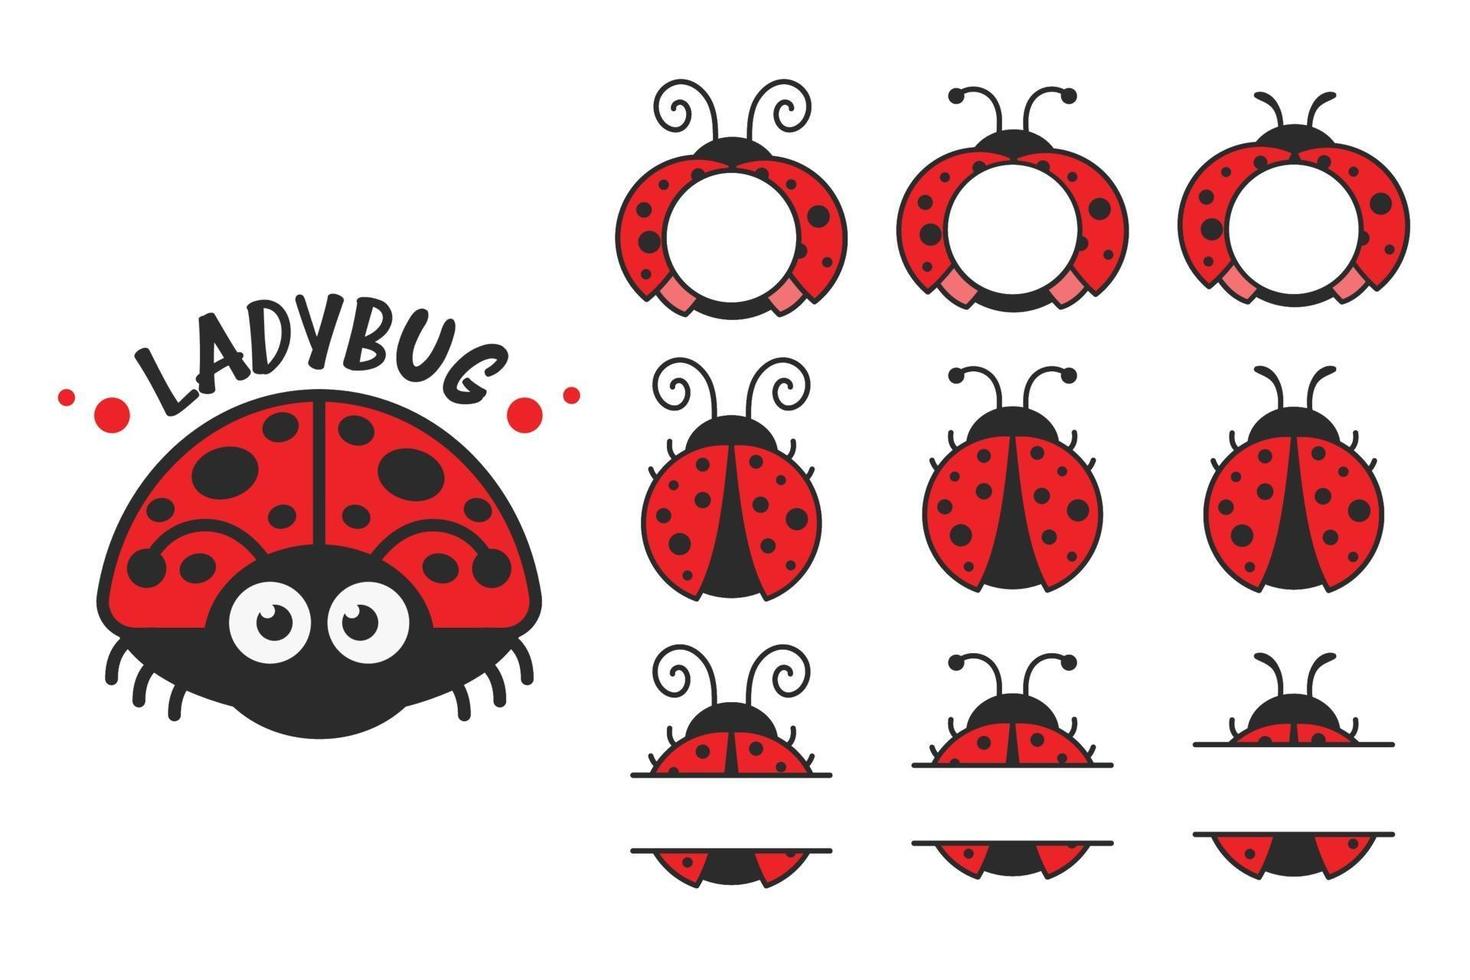 Vektor Cartoon niedlichen schwarzen Tupfen roten Marienkäfer lokalisiert auf Hintergrund